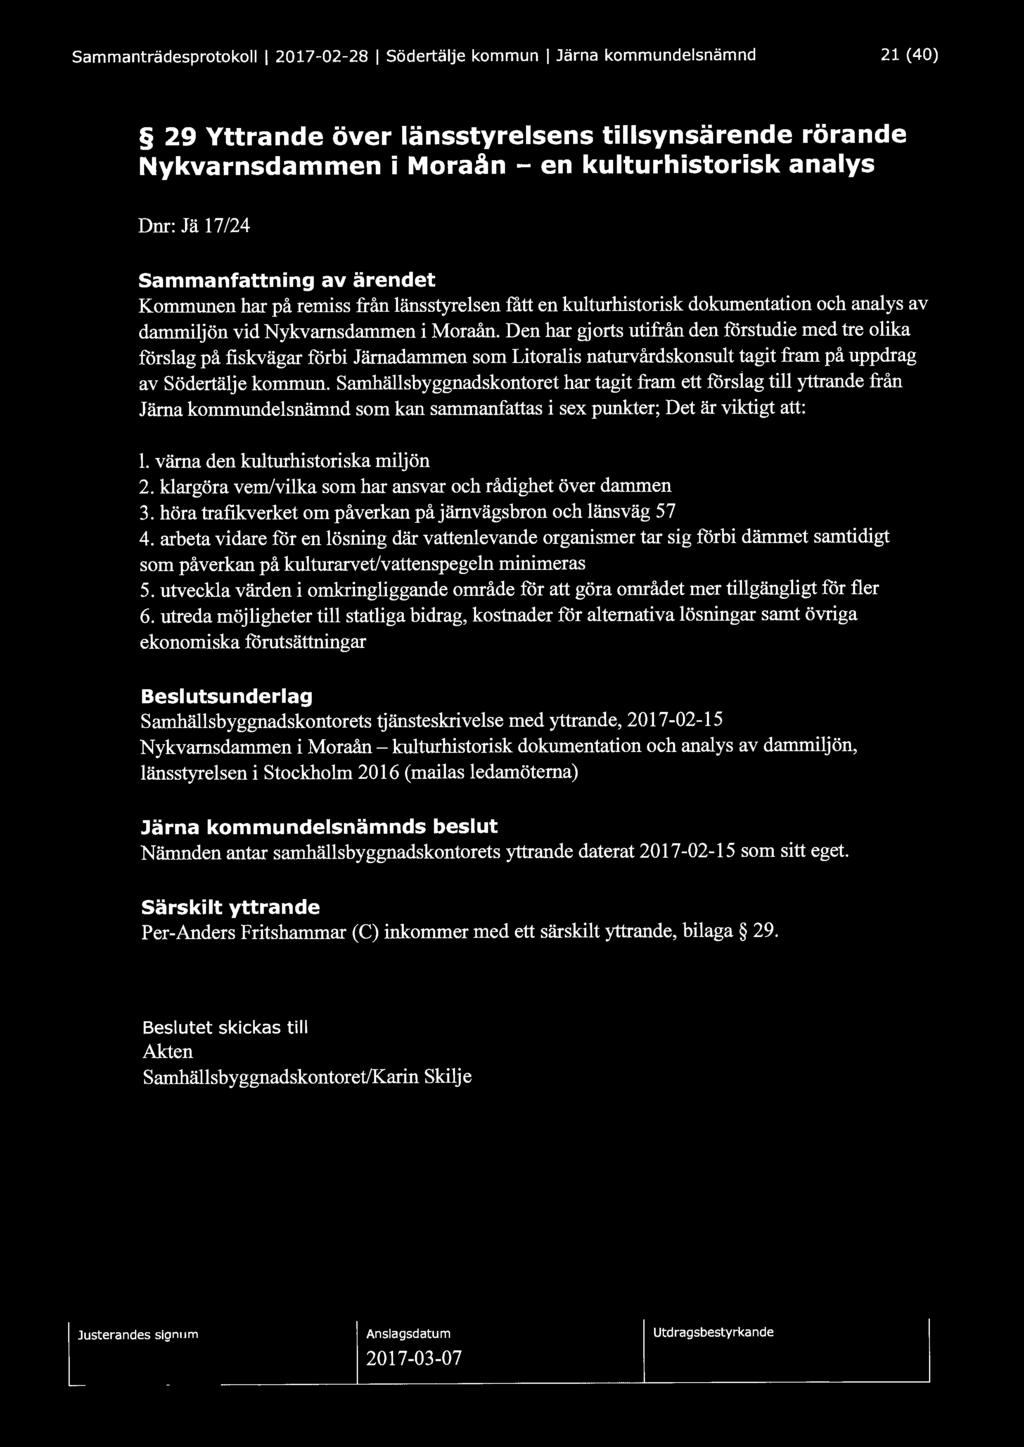 Sammanträdesprotokoll 1 2017-02-28 1 Södertälje kommun l Järna kommundelsnämnd 21 (40) 29 Yttrande över länsstyrelsens tillsynsärende rörande Nykvarnsdammen i Moraån - en kulturhistorisk analys Dnr: